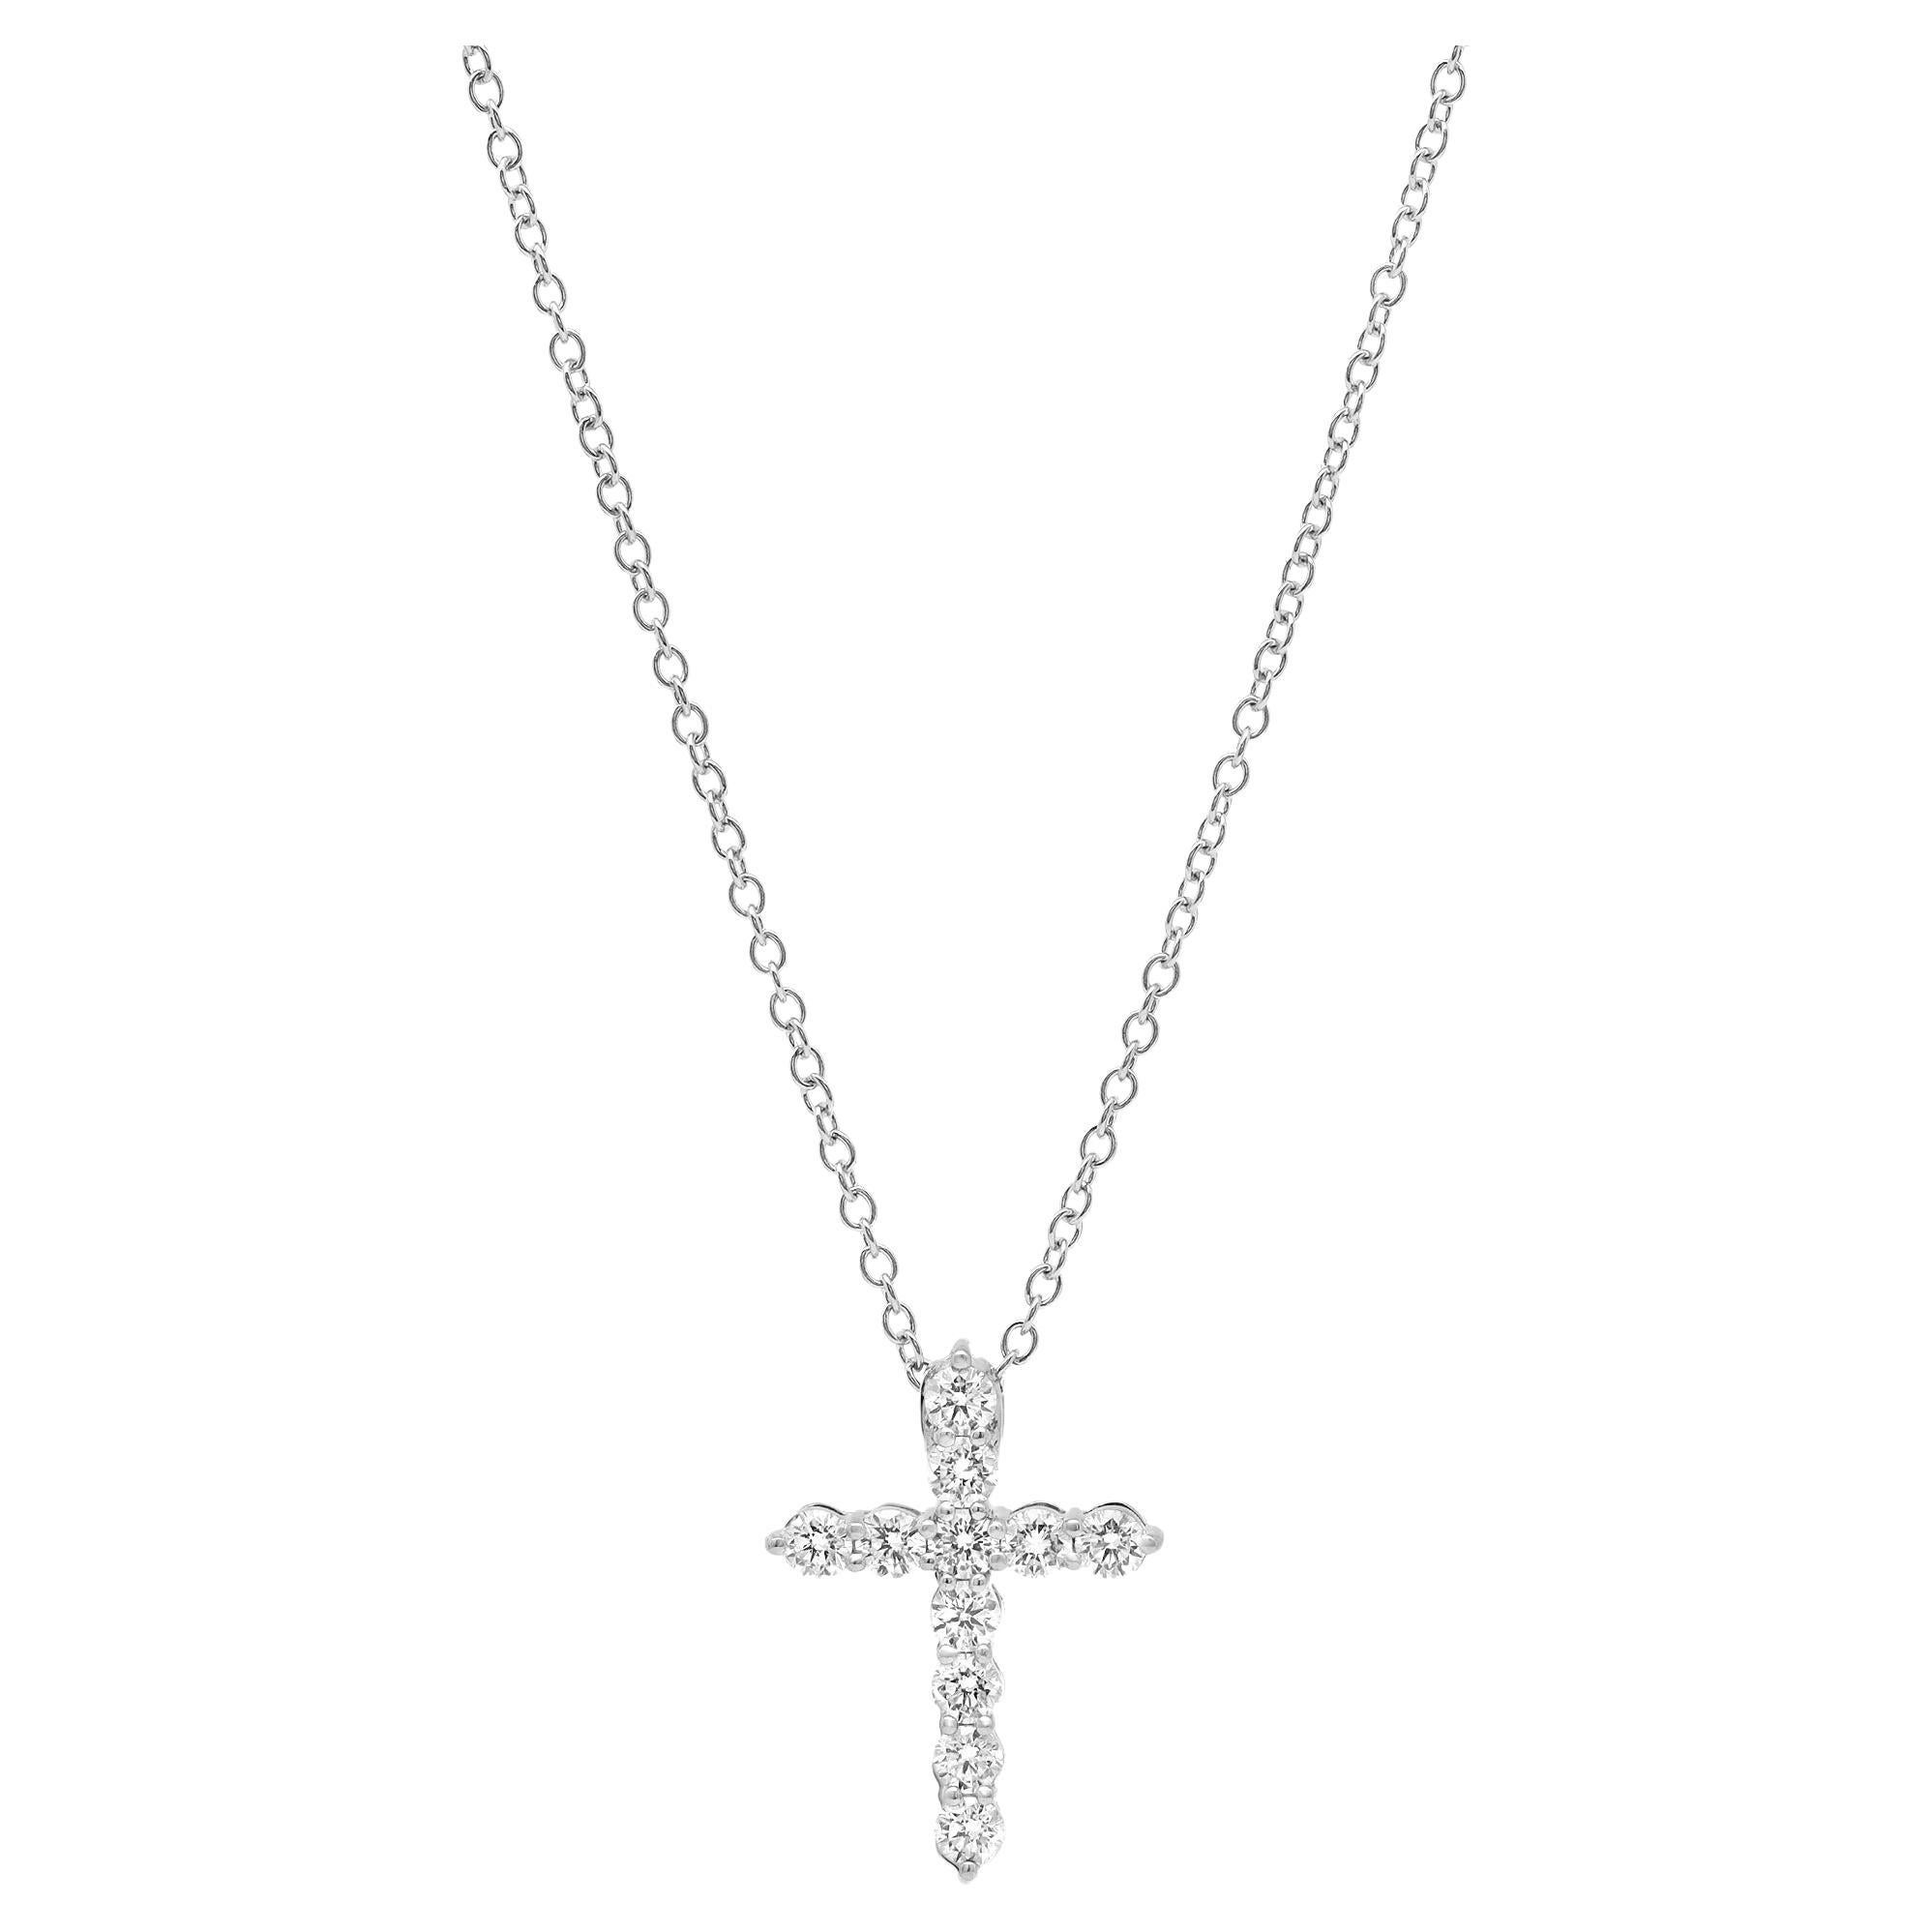 Rachel Koen Collier pendentif croix en or blanc 18 carats avec diamants taille ronde de 1,01 carat poids total